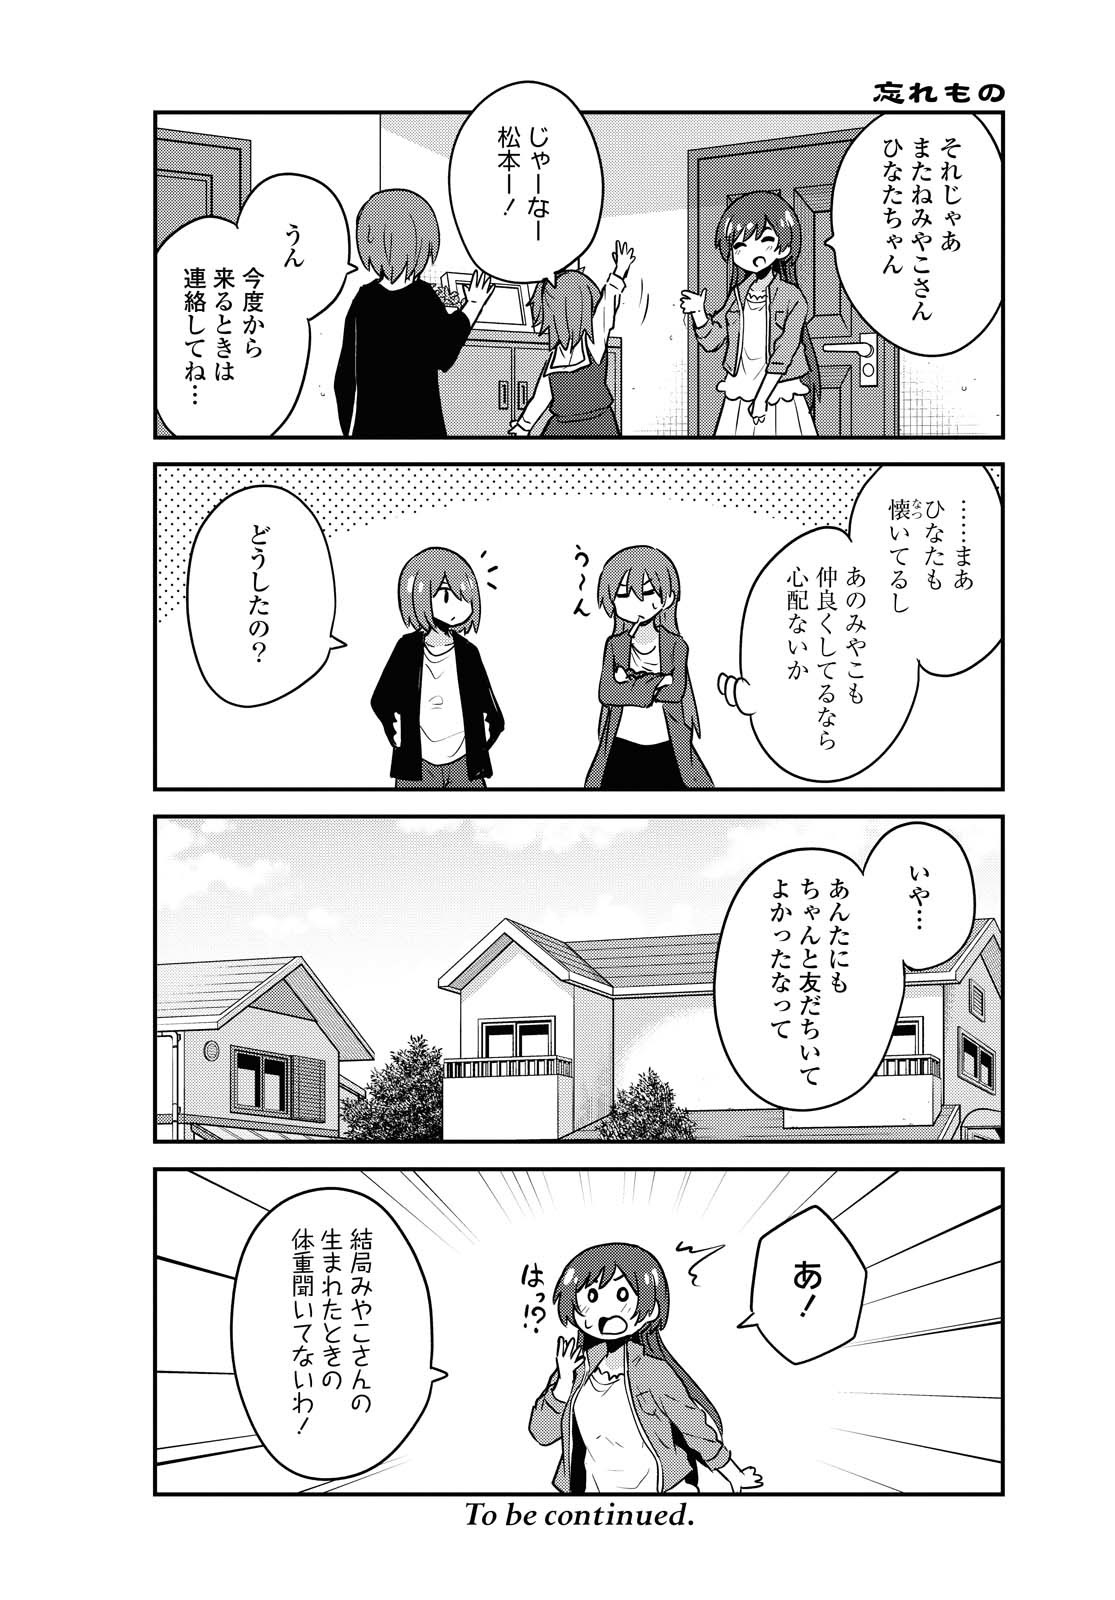 Watashi ni Tenshi ga Maiorita! - Chapter 65 - Page 12